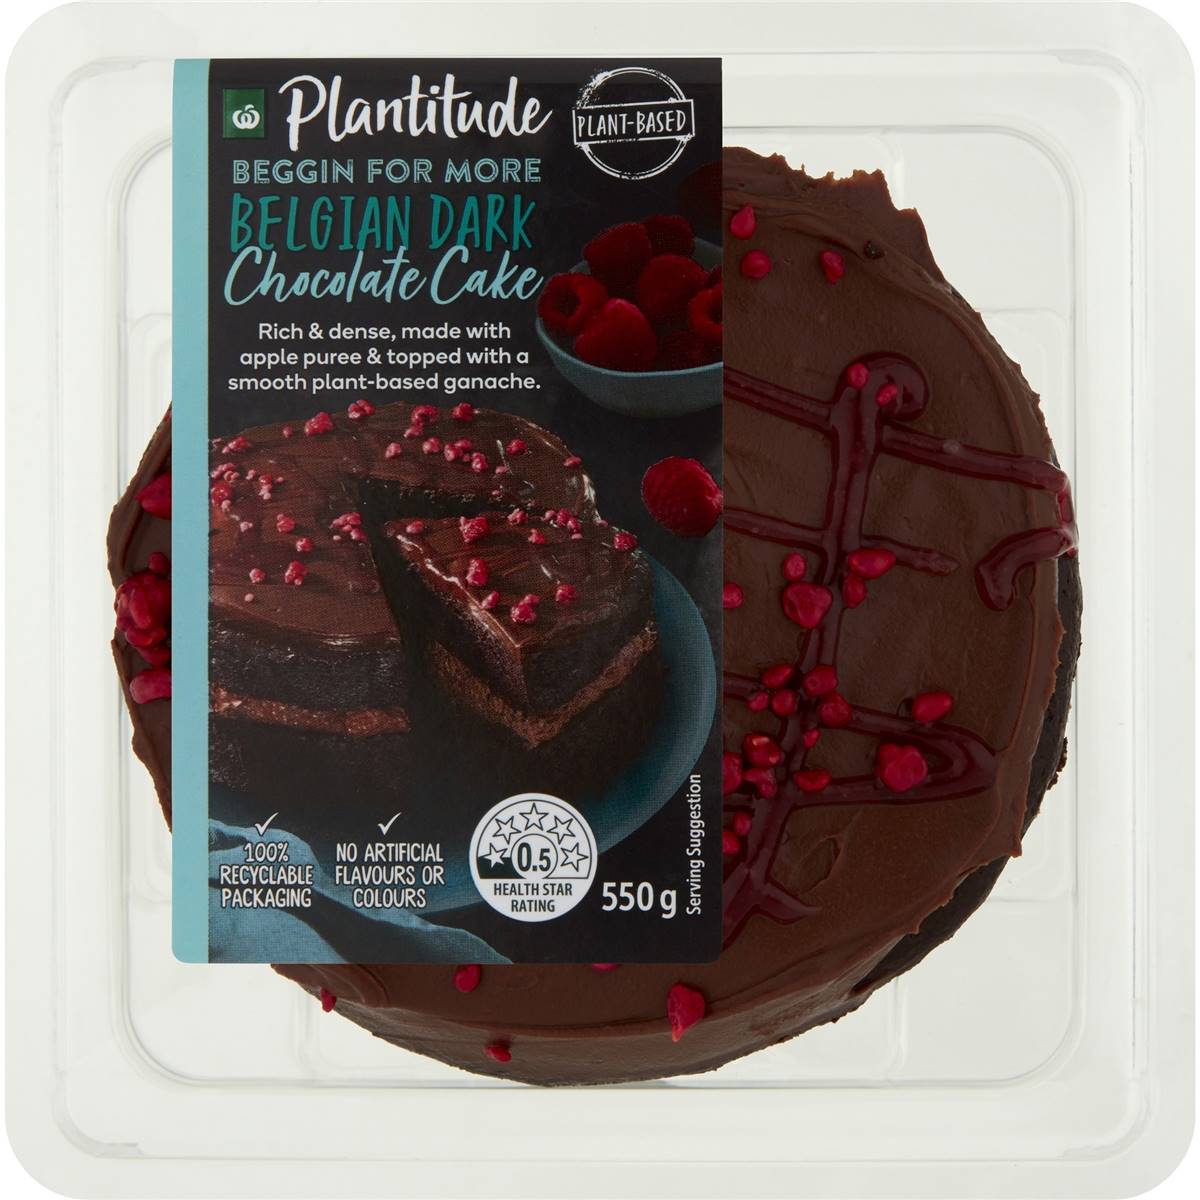 Calories in Woolworths Plantitude Vegan Belgian Dark Chocolate Cake